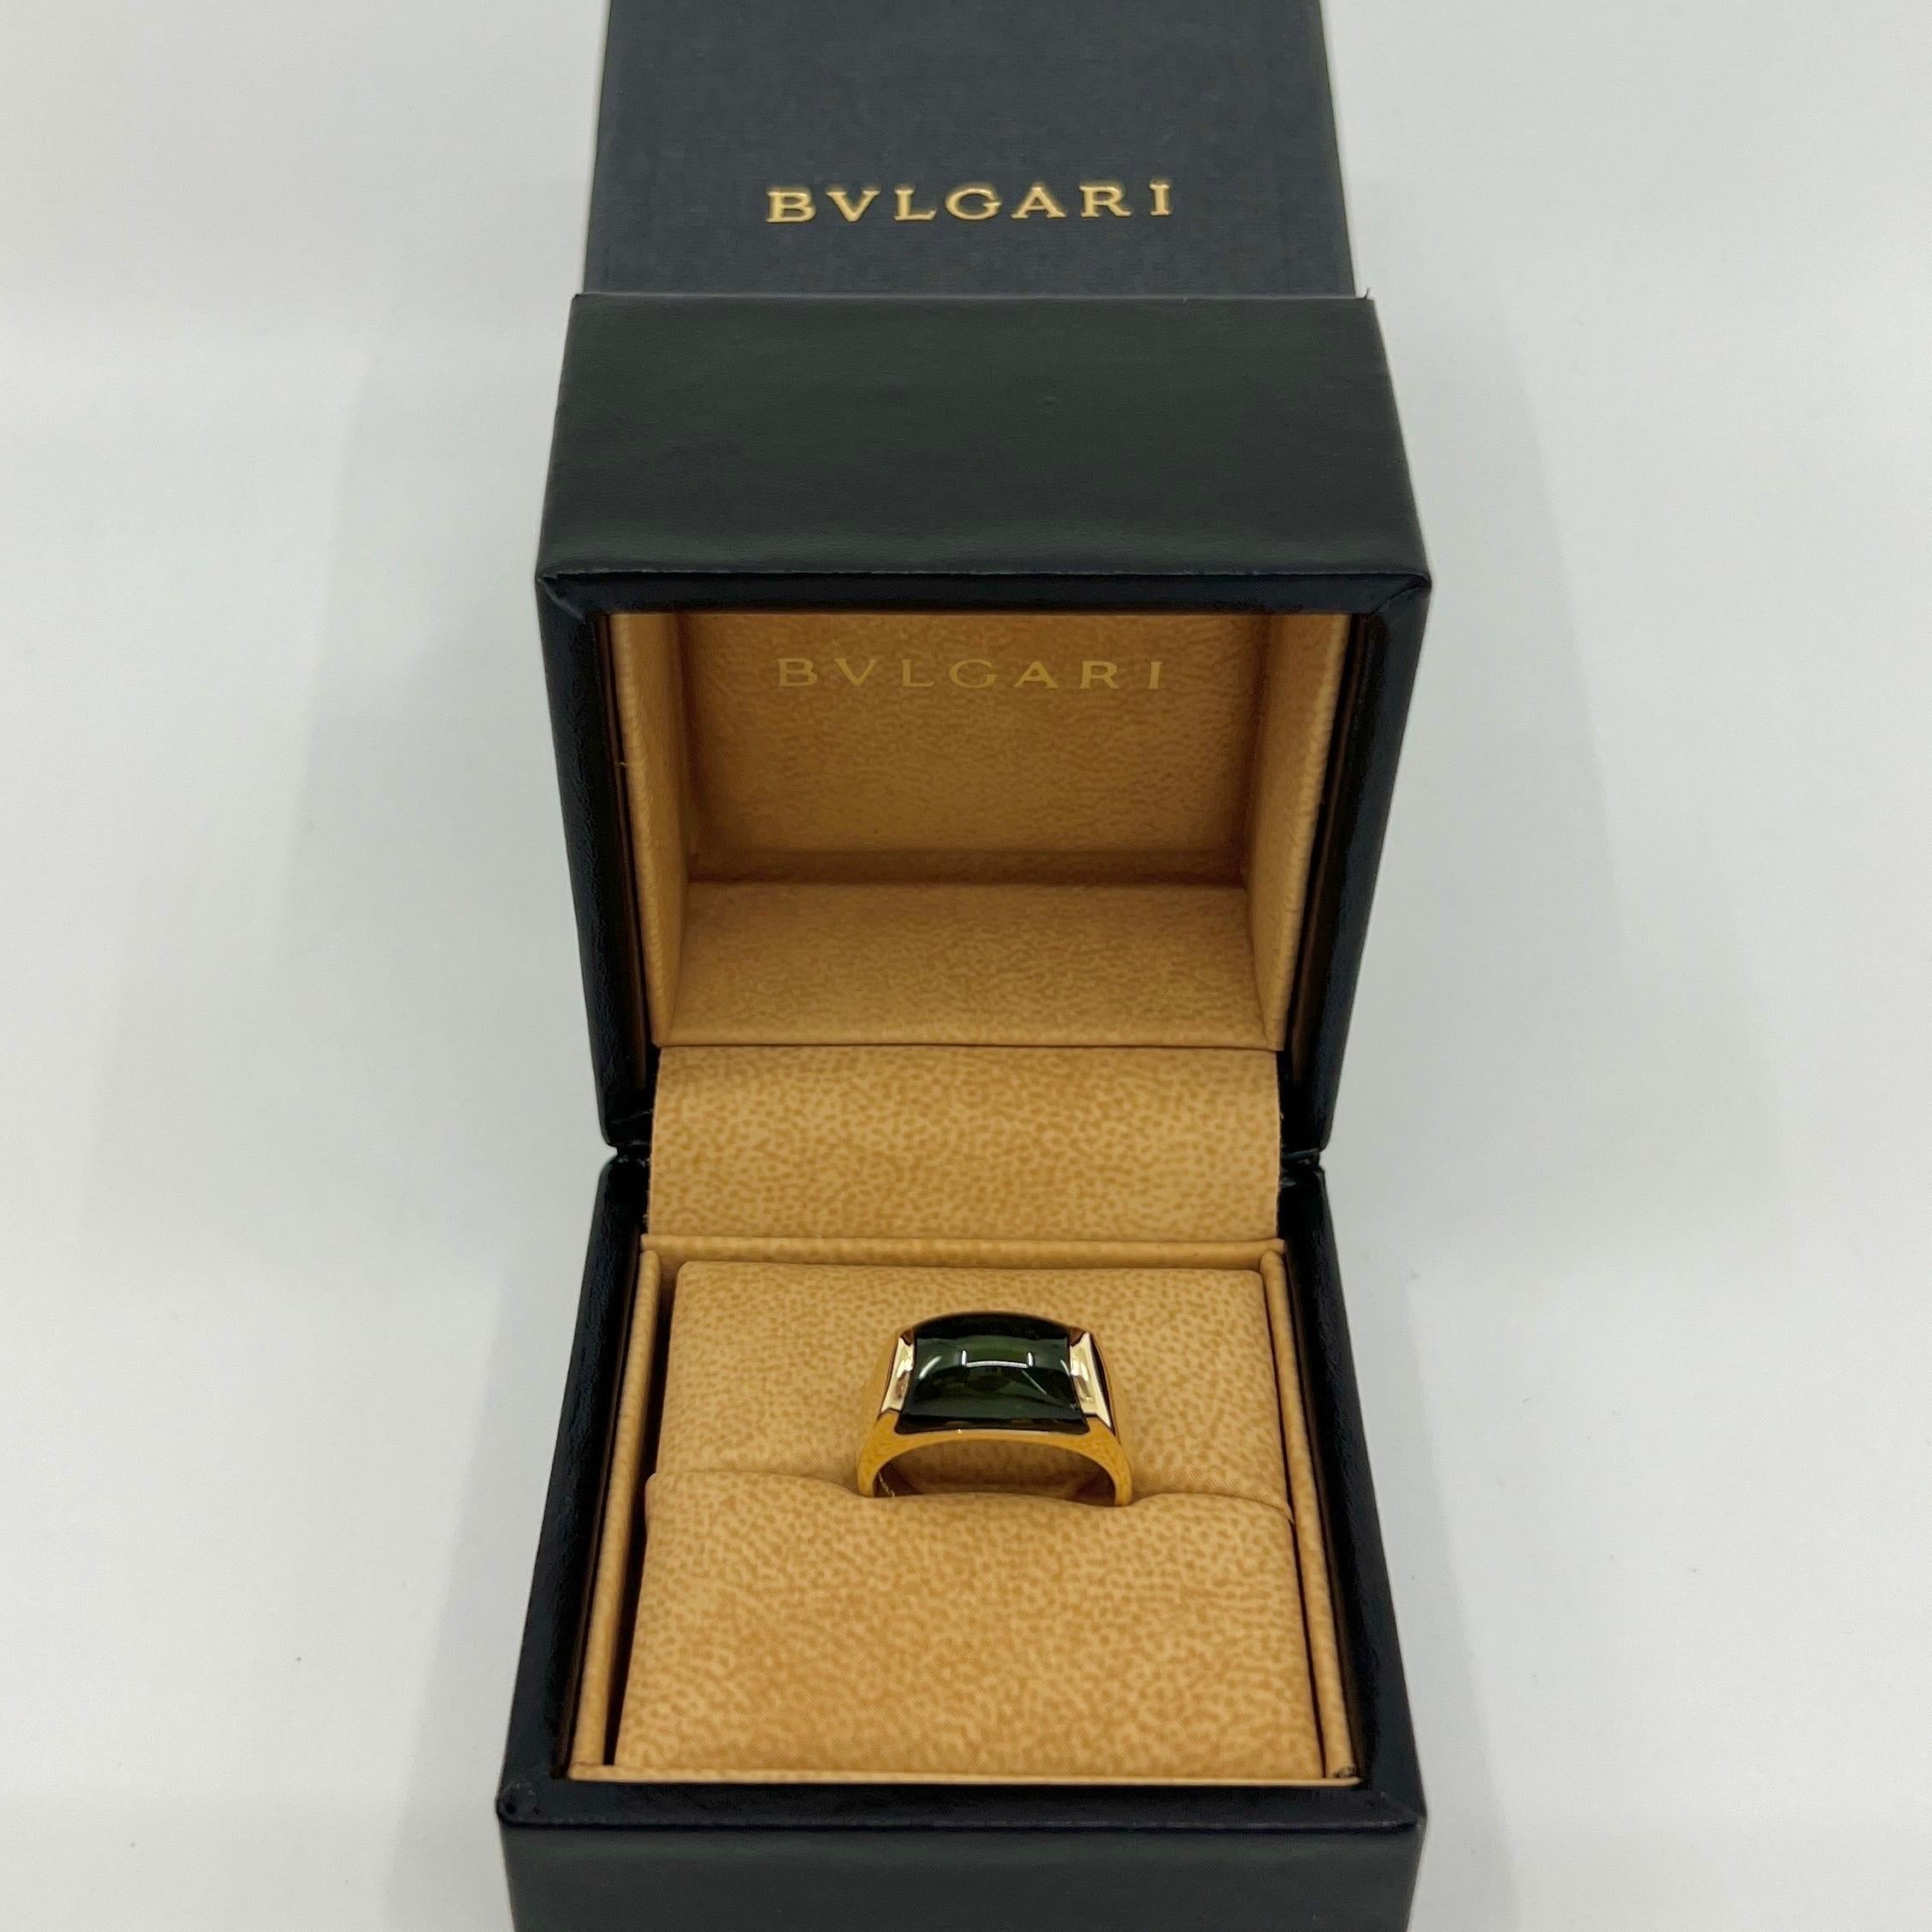 Seltene Bvlgari Deep Green Turmalin Tronchetto 18k Gelbgold Ring.

Schöner gewölbter grüner Turmalin, eingefasst in einen feinen Ring aus 18 Karat Gelbgold mit Spannring.

In sehr gutem Zustand, wurde professionell poliert und gereinigt. Einige